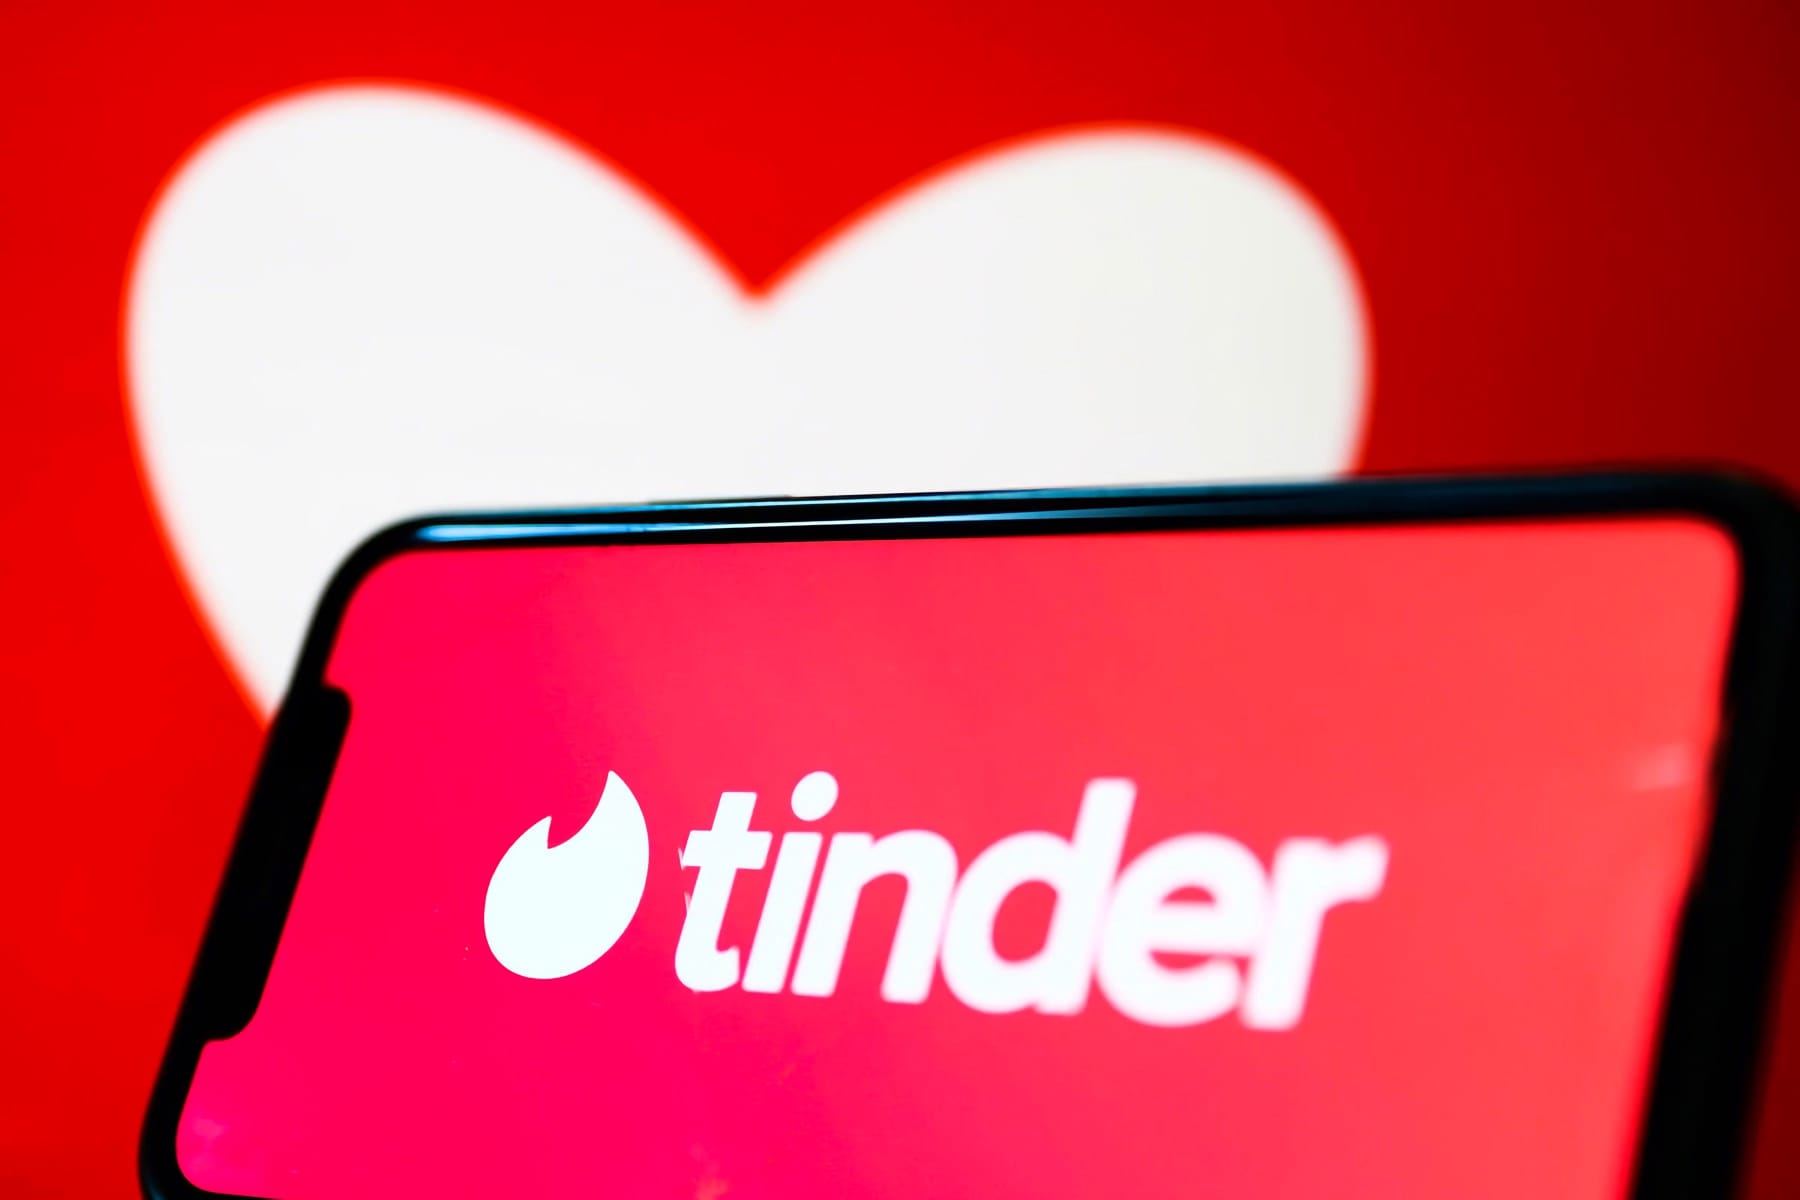 Tinder ушел из России. Как пользоваться популярным сервисом знакомств после блокировки